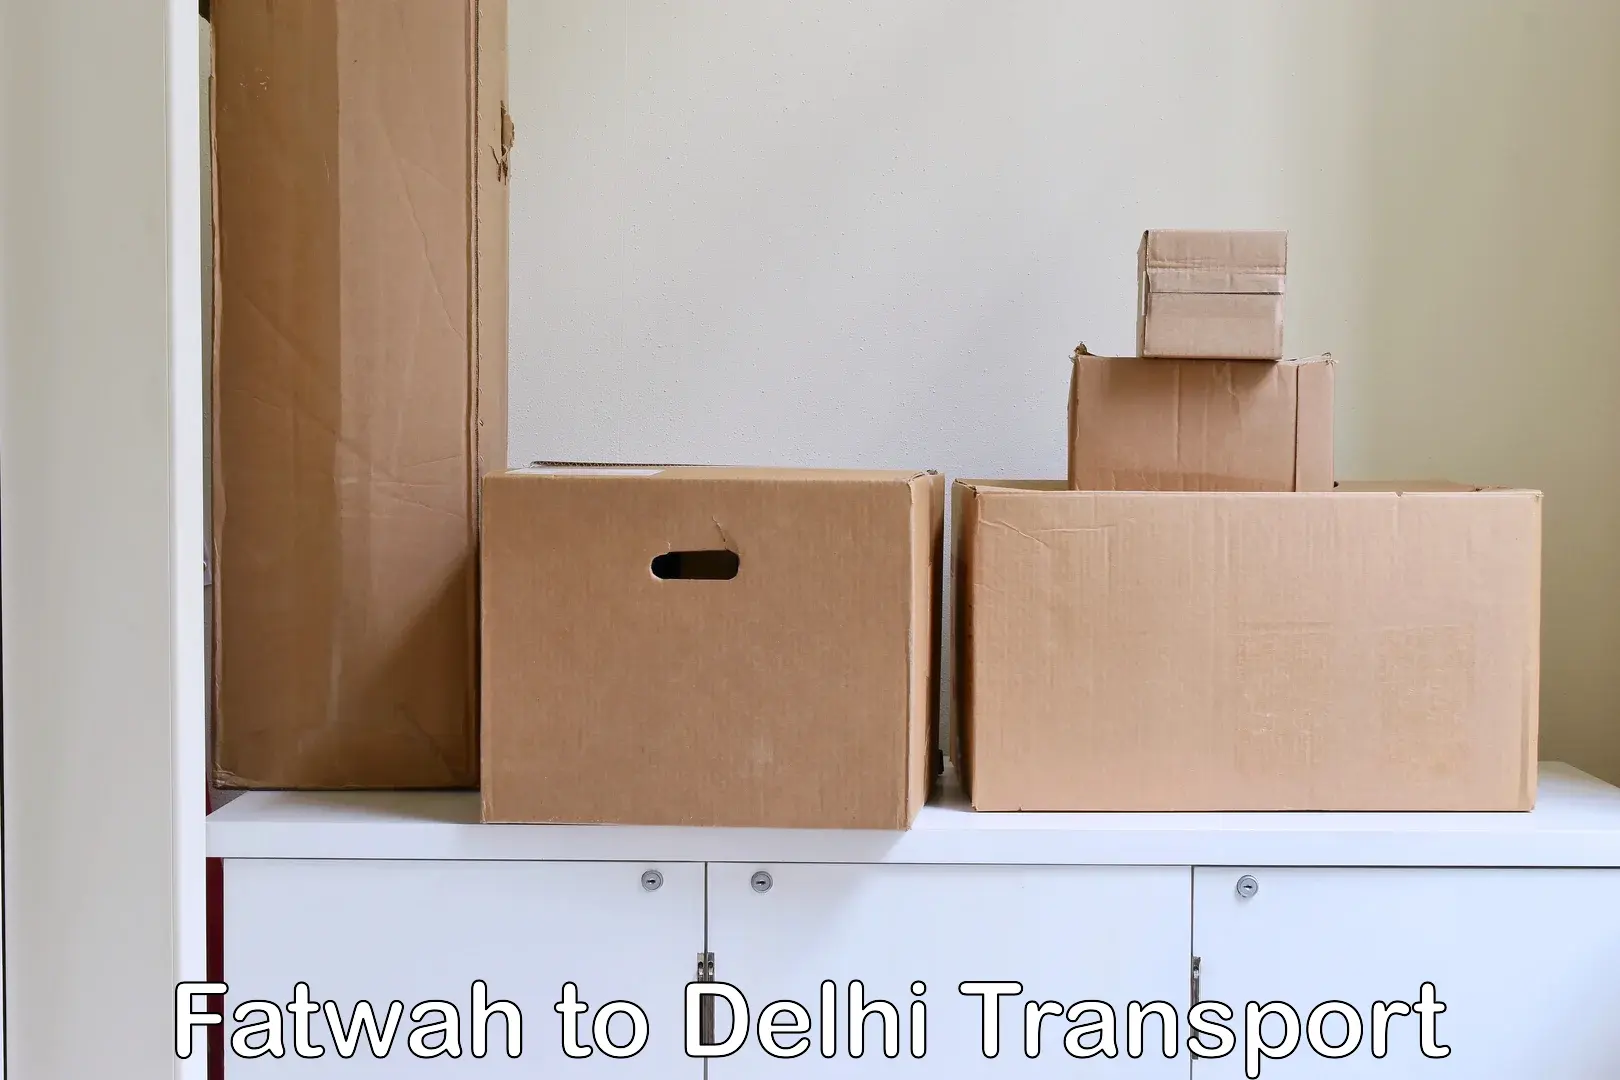 Bike shipping service Fatwah to Delhi